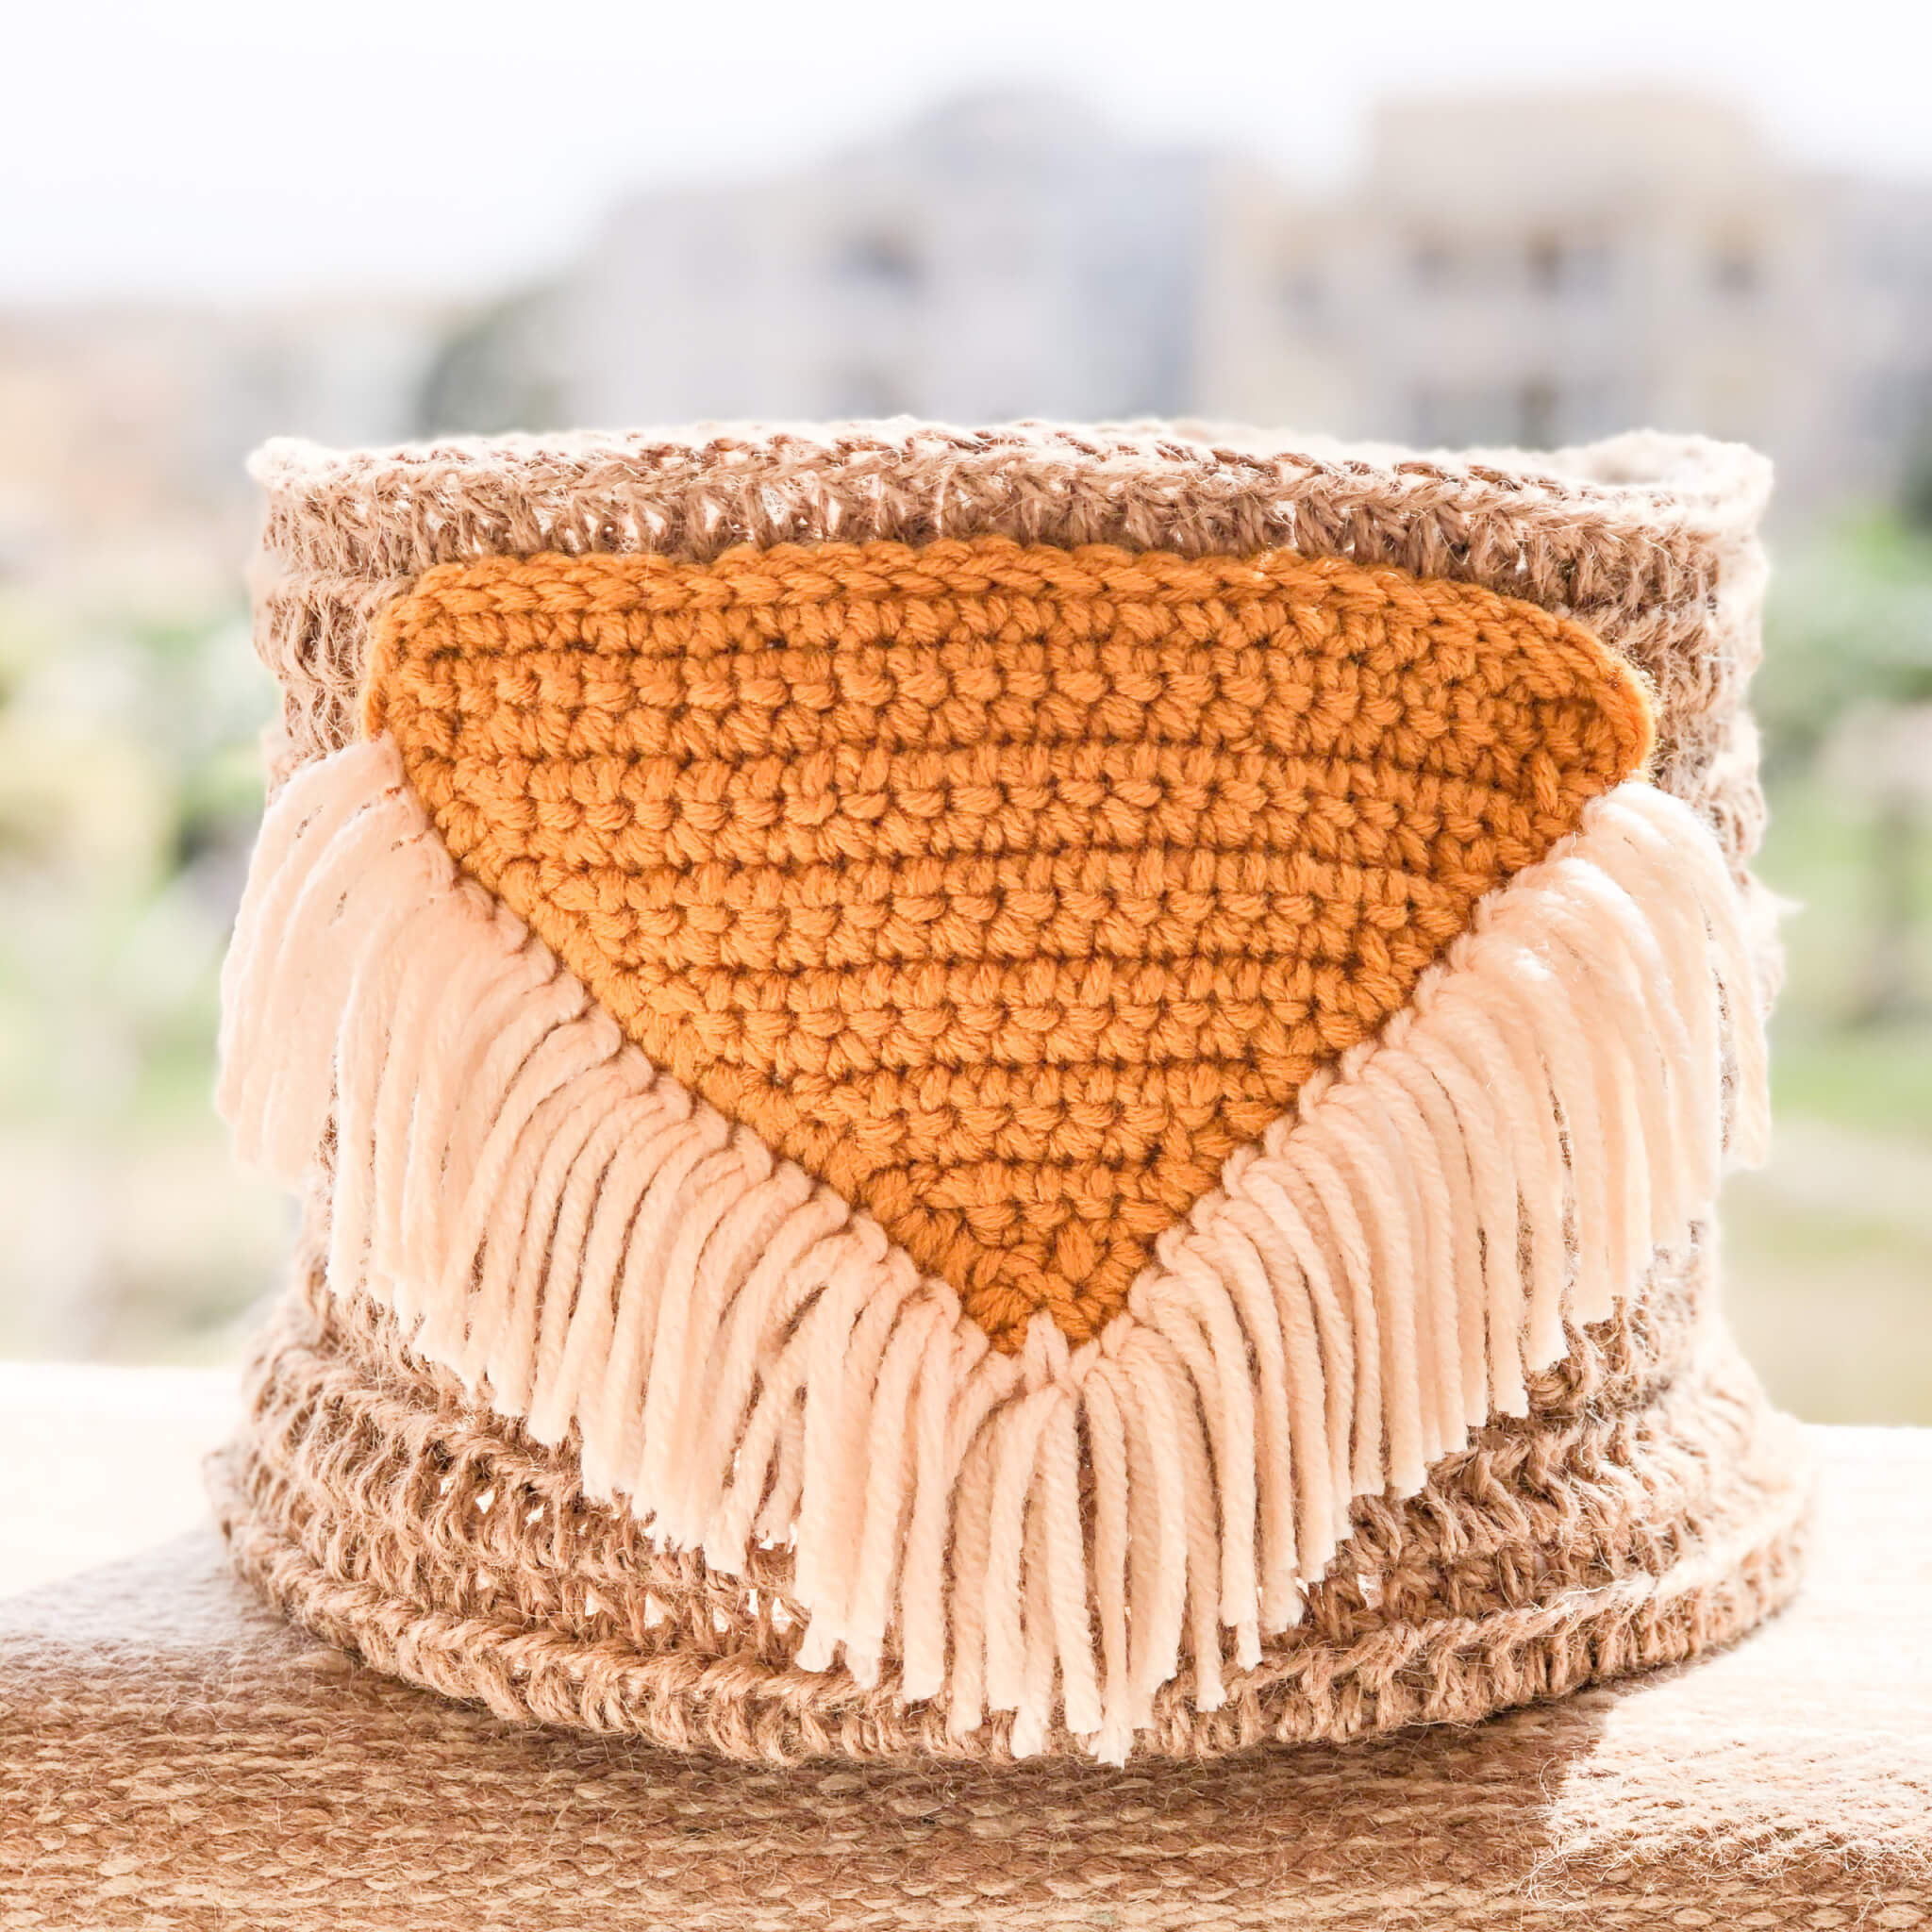 Crochet Basket- Boho baskets Free pattern – Topknotch